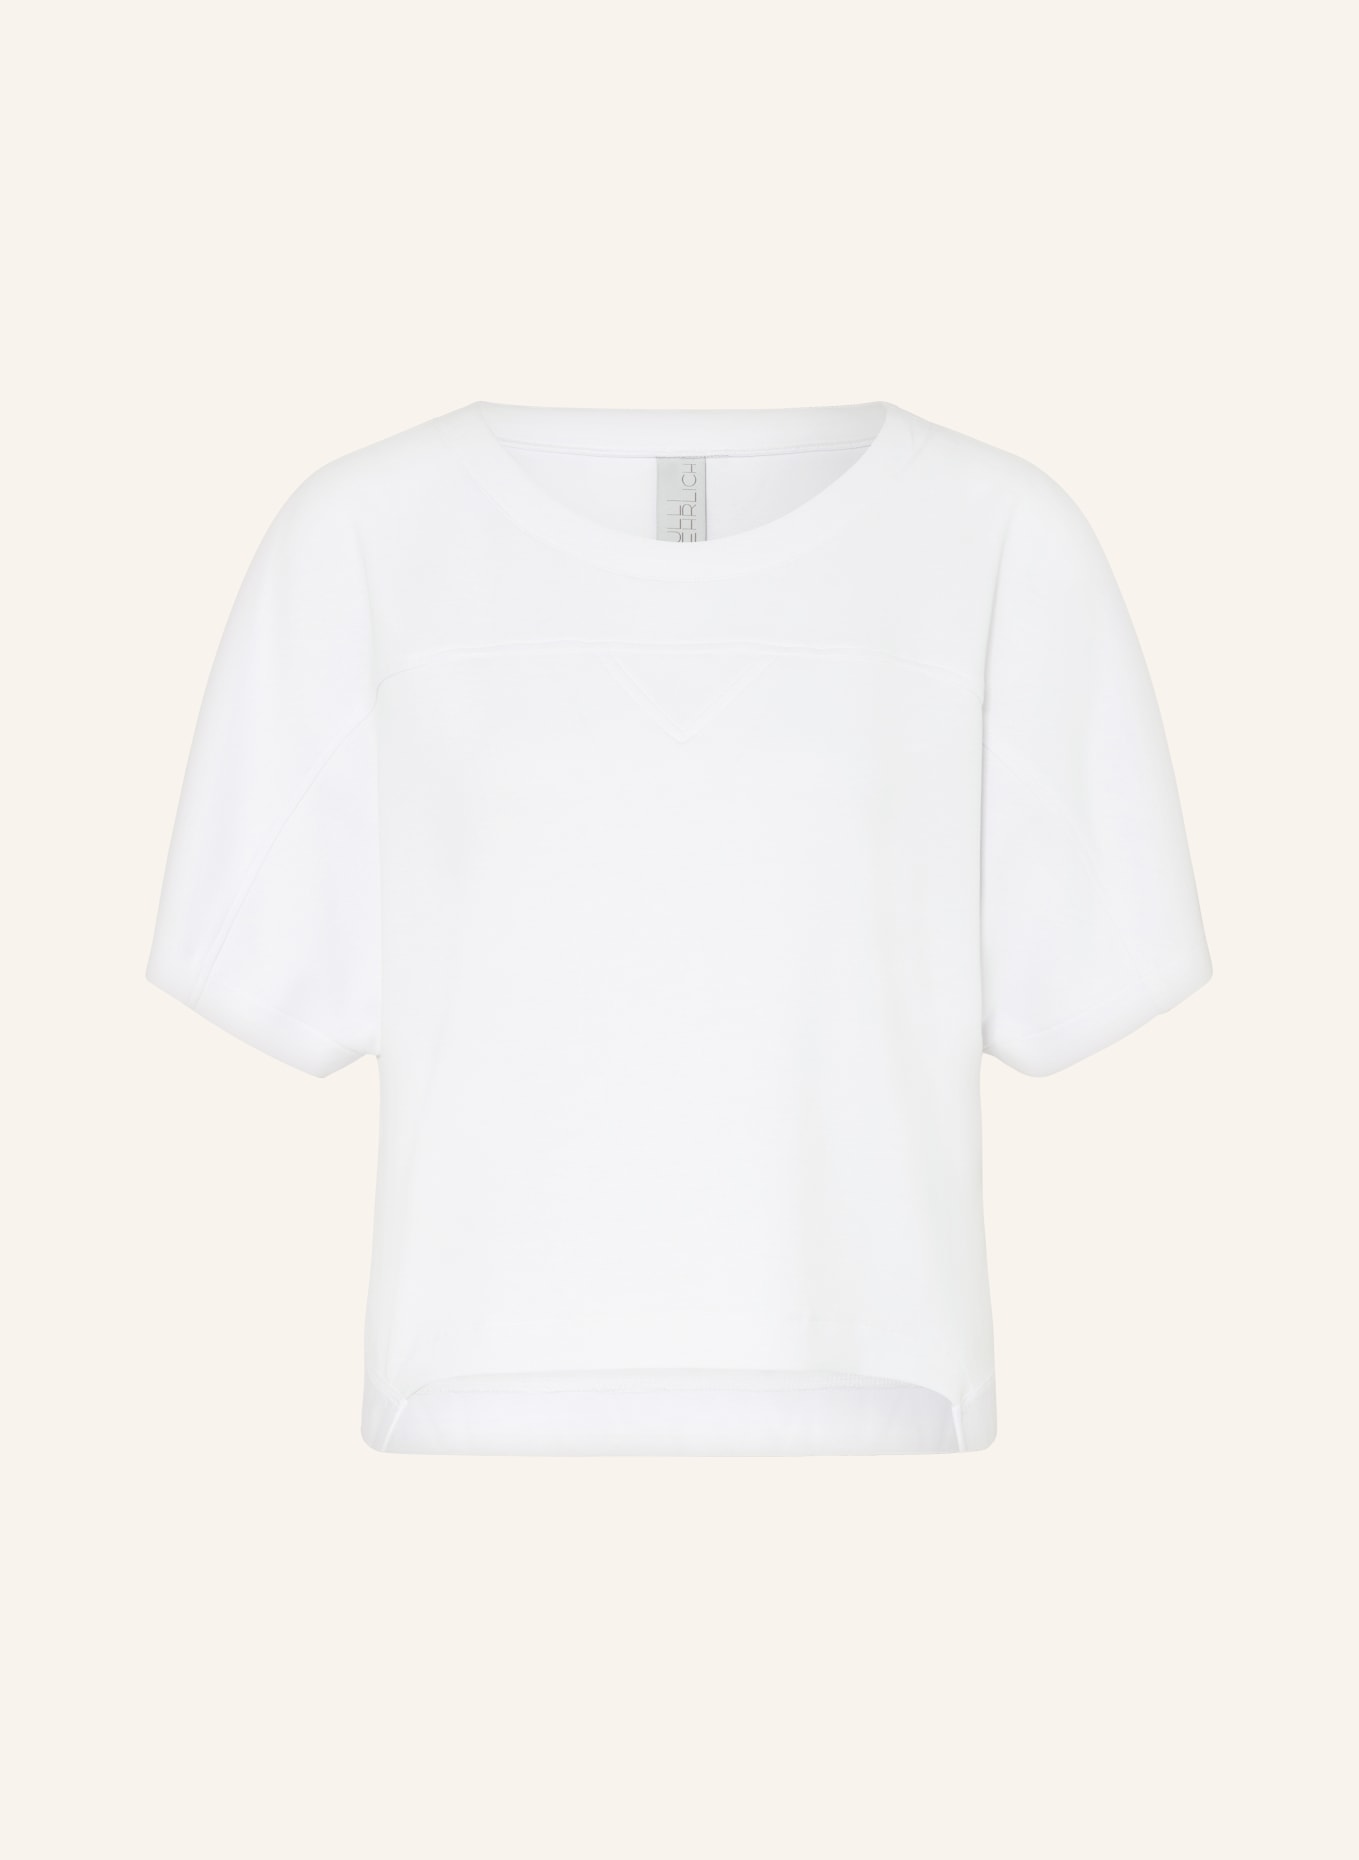 ULLI EHRLICH SPORTALM T-shirt, Color: WHITE (Image 1)